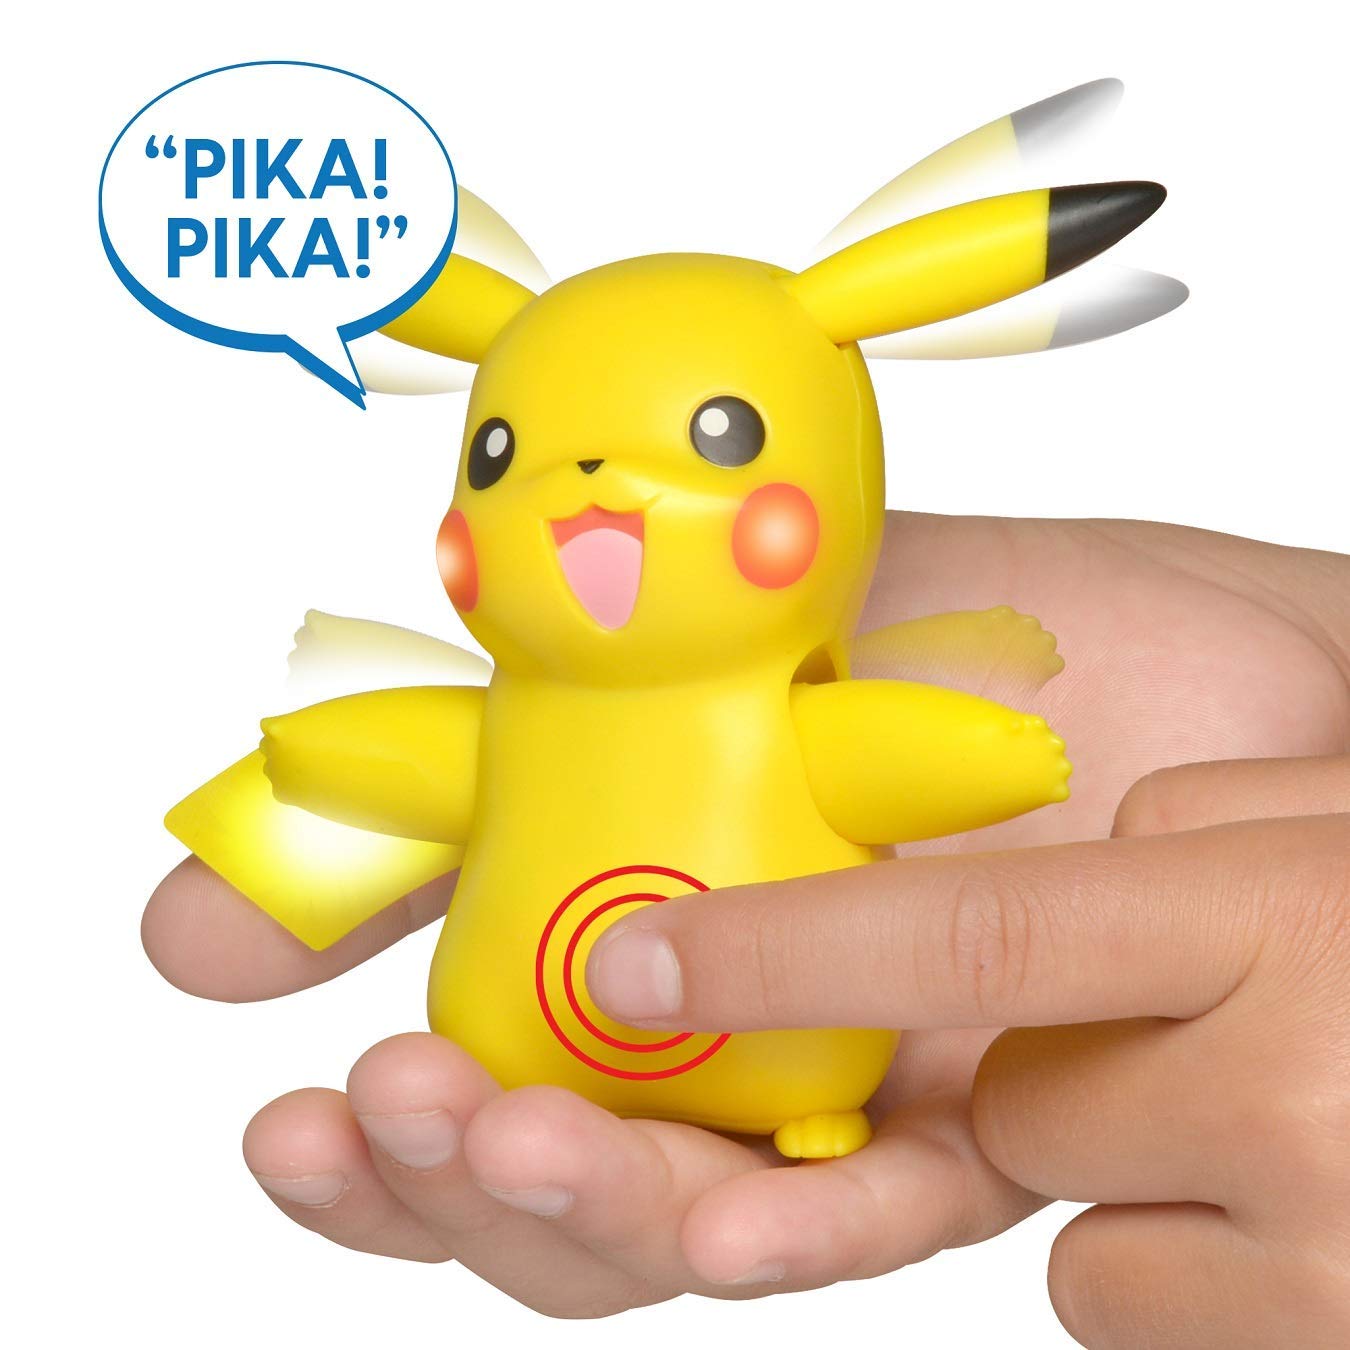 Pokémon Electronic & Interactive My Partner Pikachu